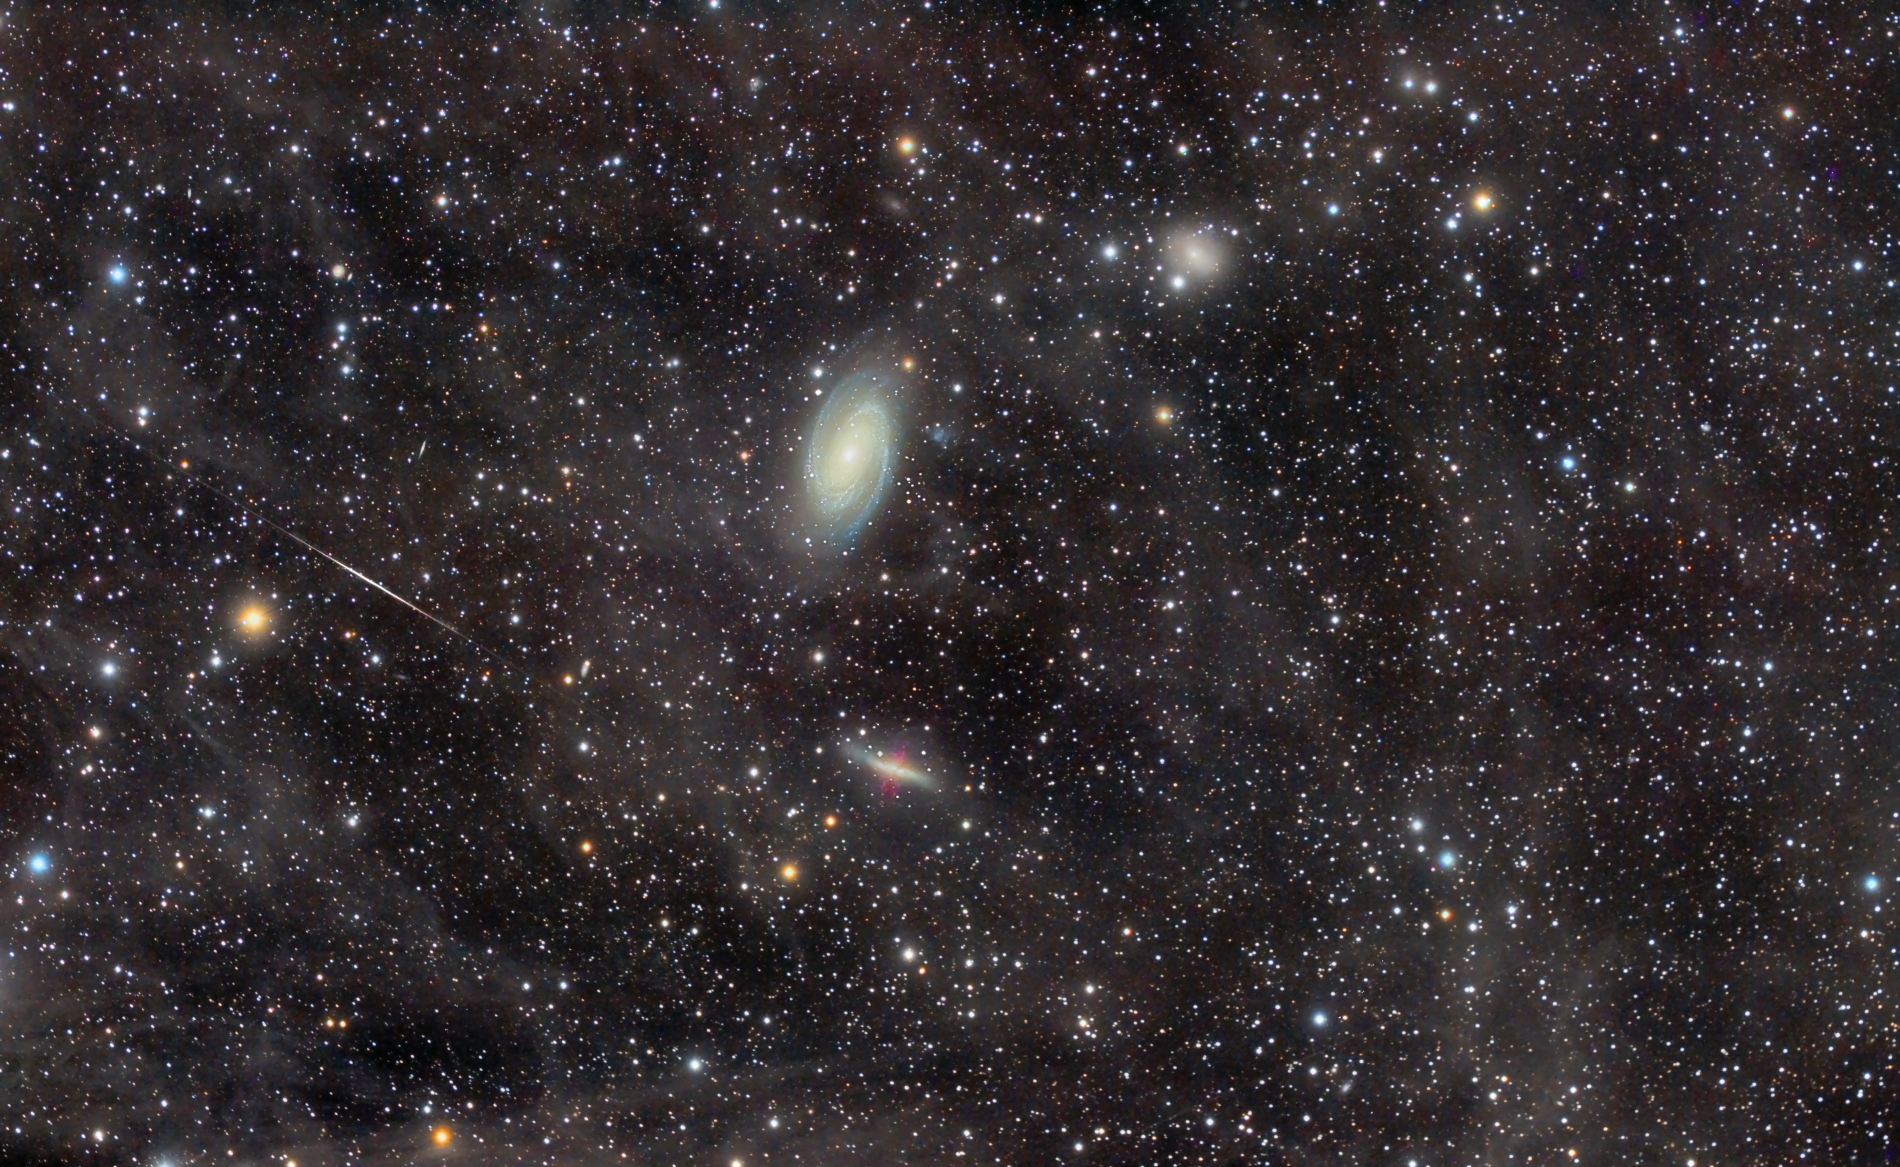 Le groupe galactique de M81 au travers de la nébuleuse de flux intégré